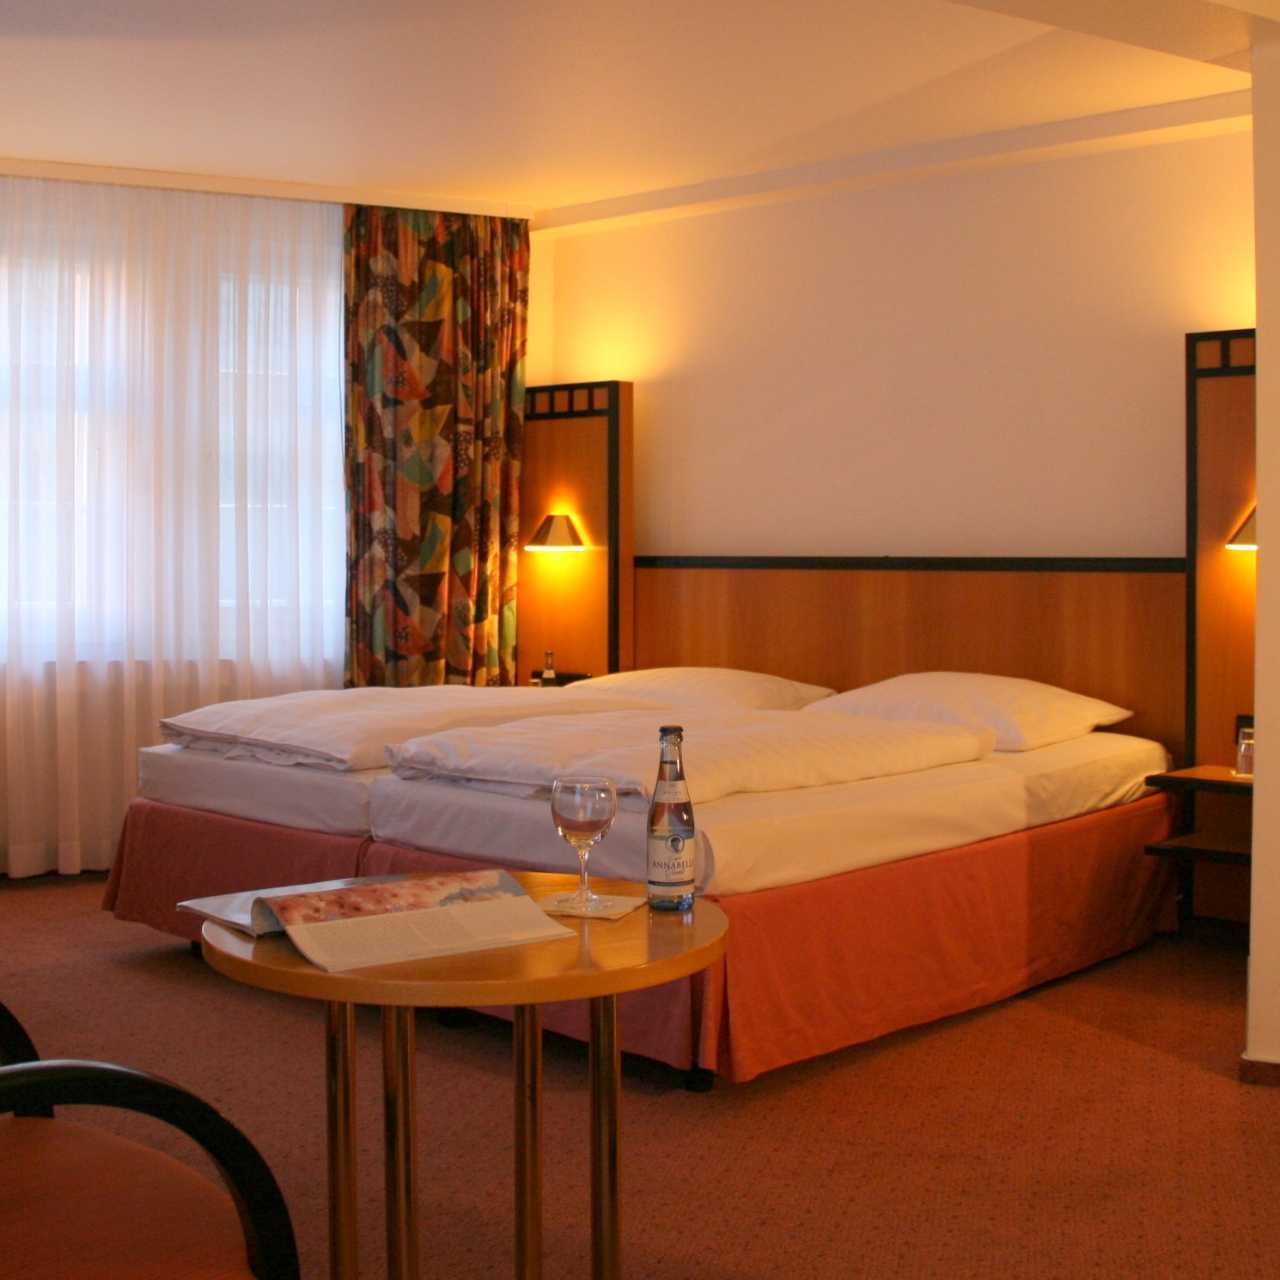 Hotel Schere - 4 HRS star hotel in Northeim (Lower Saxony)